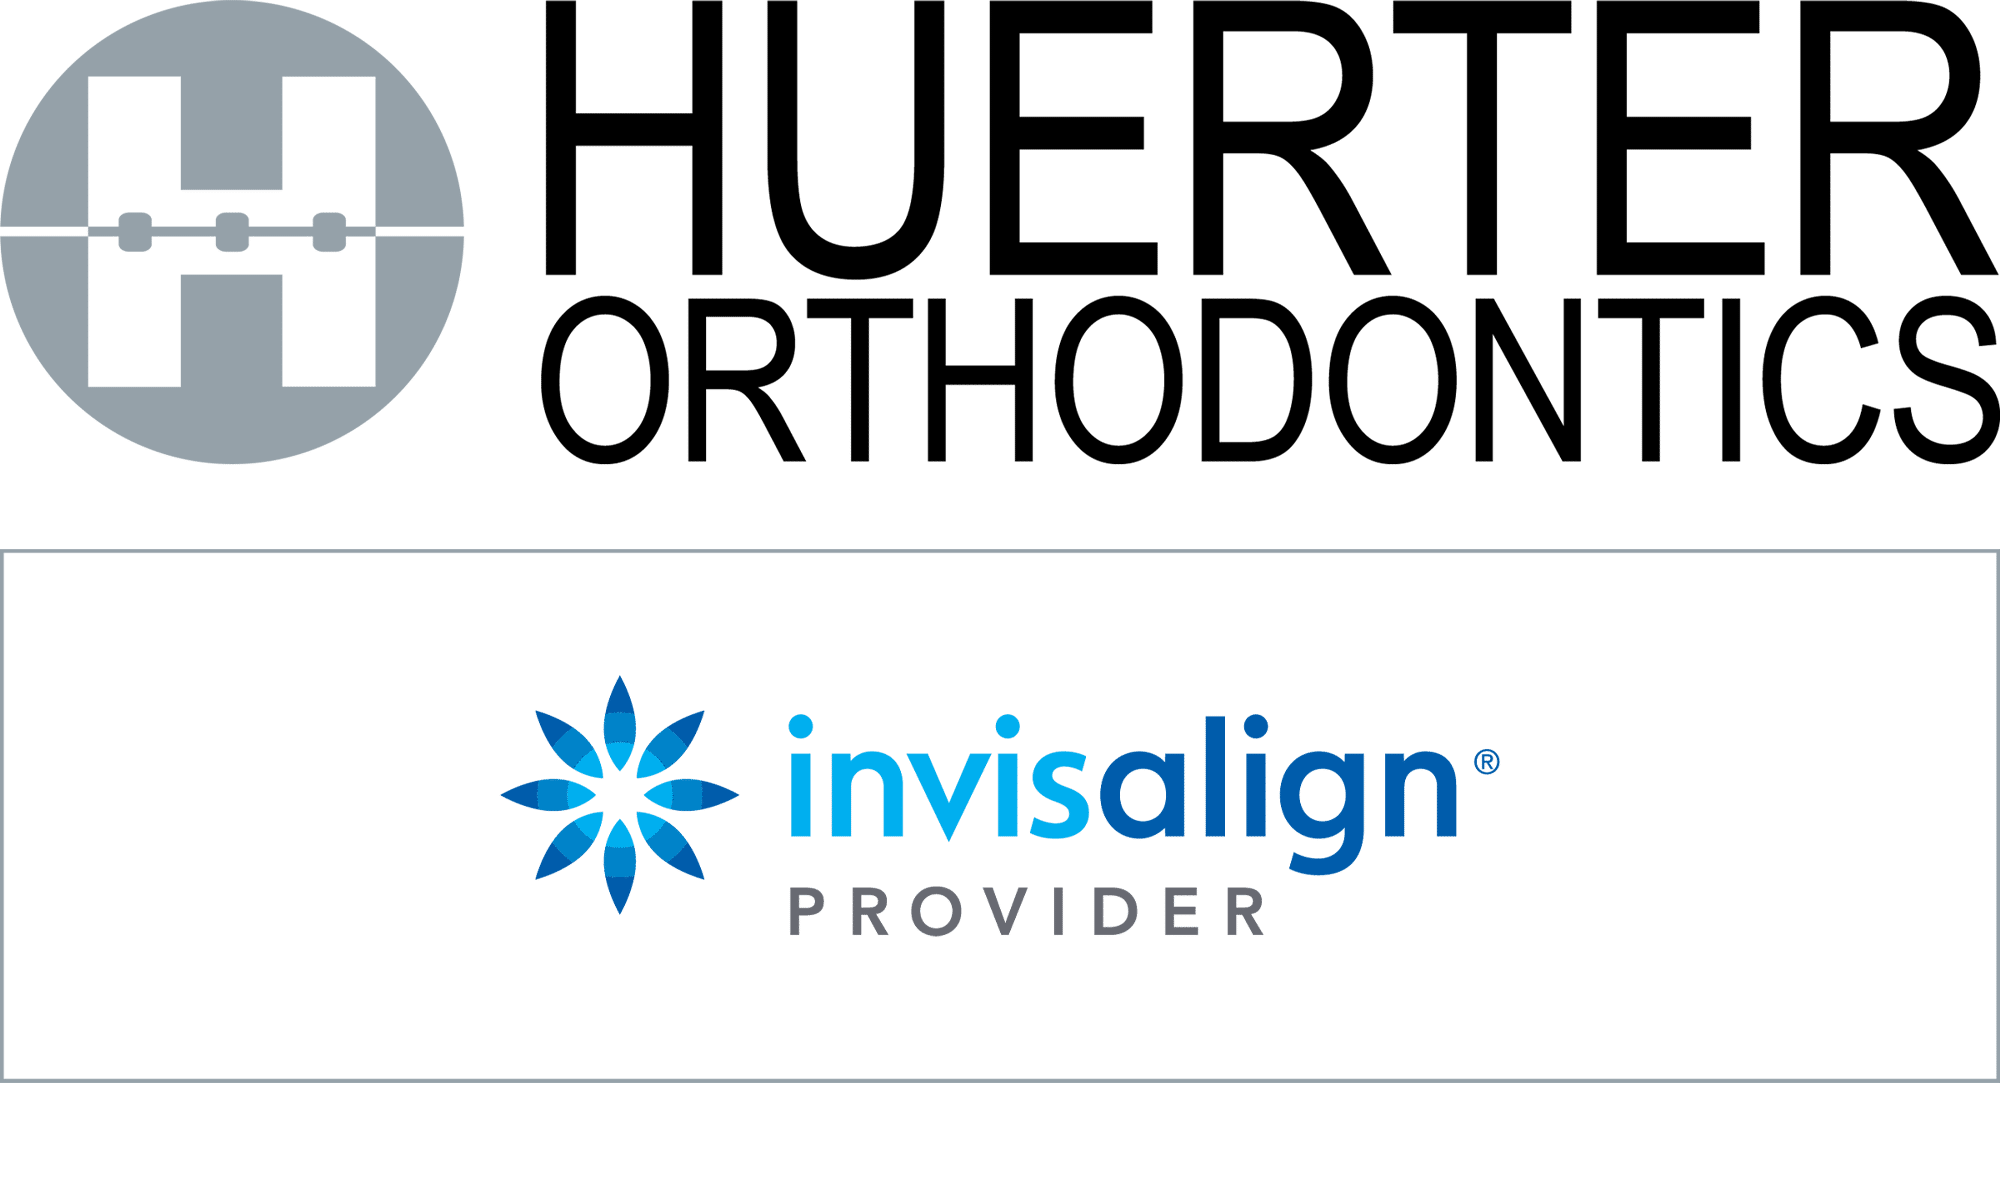 Huerter Orthodontics Invisalign® logo